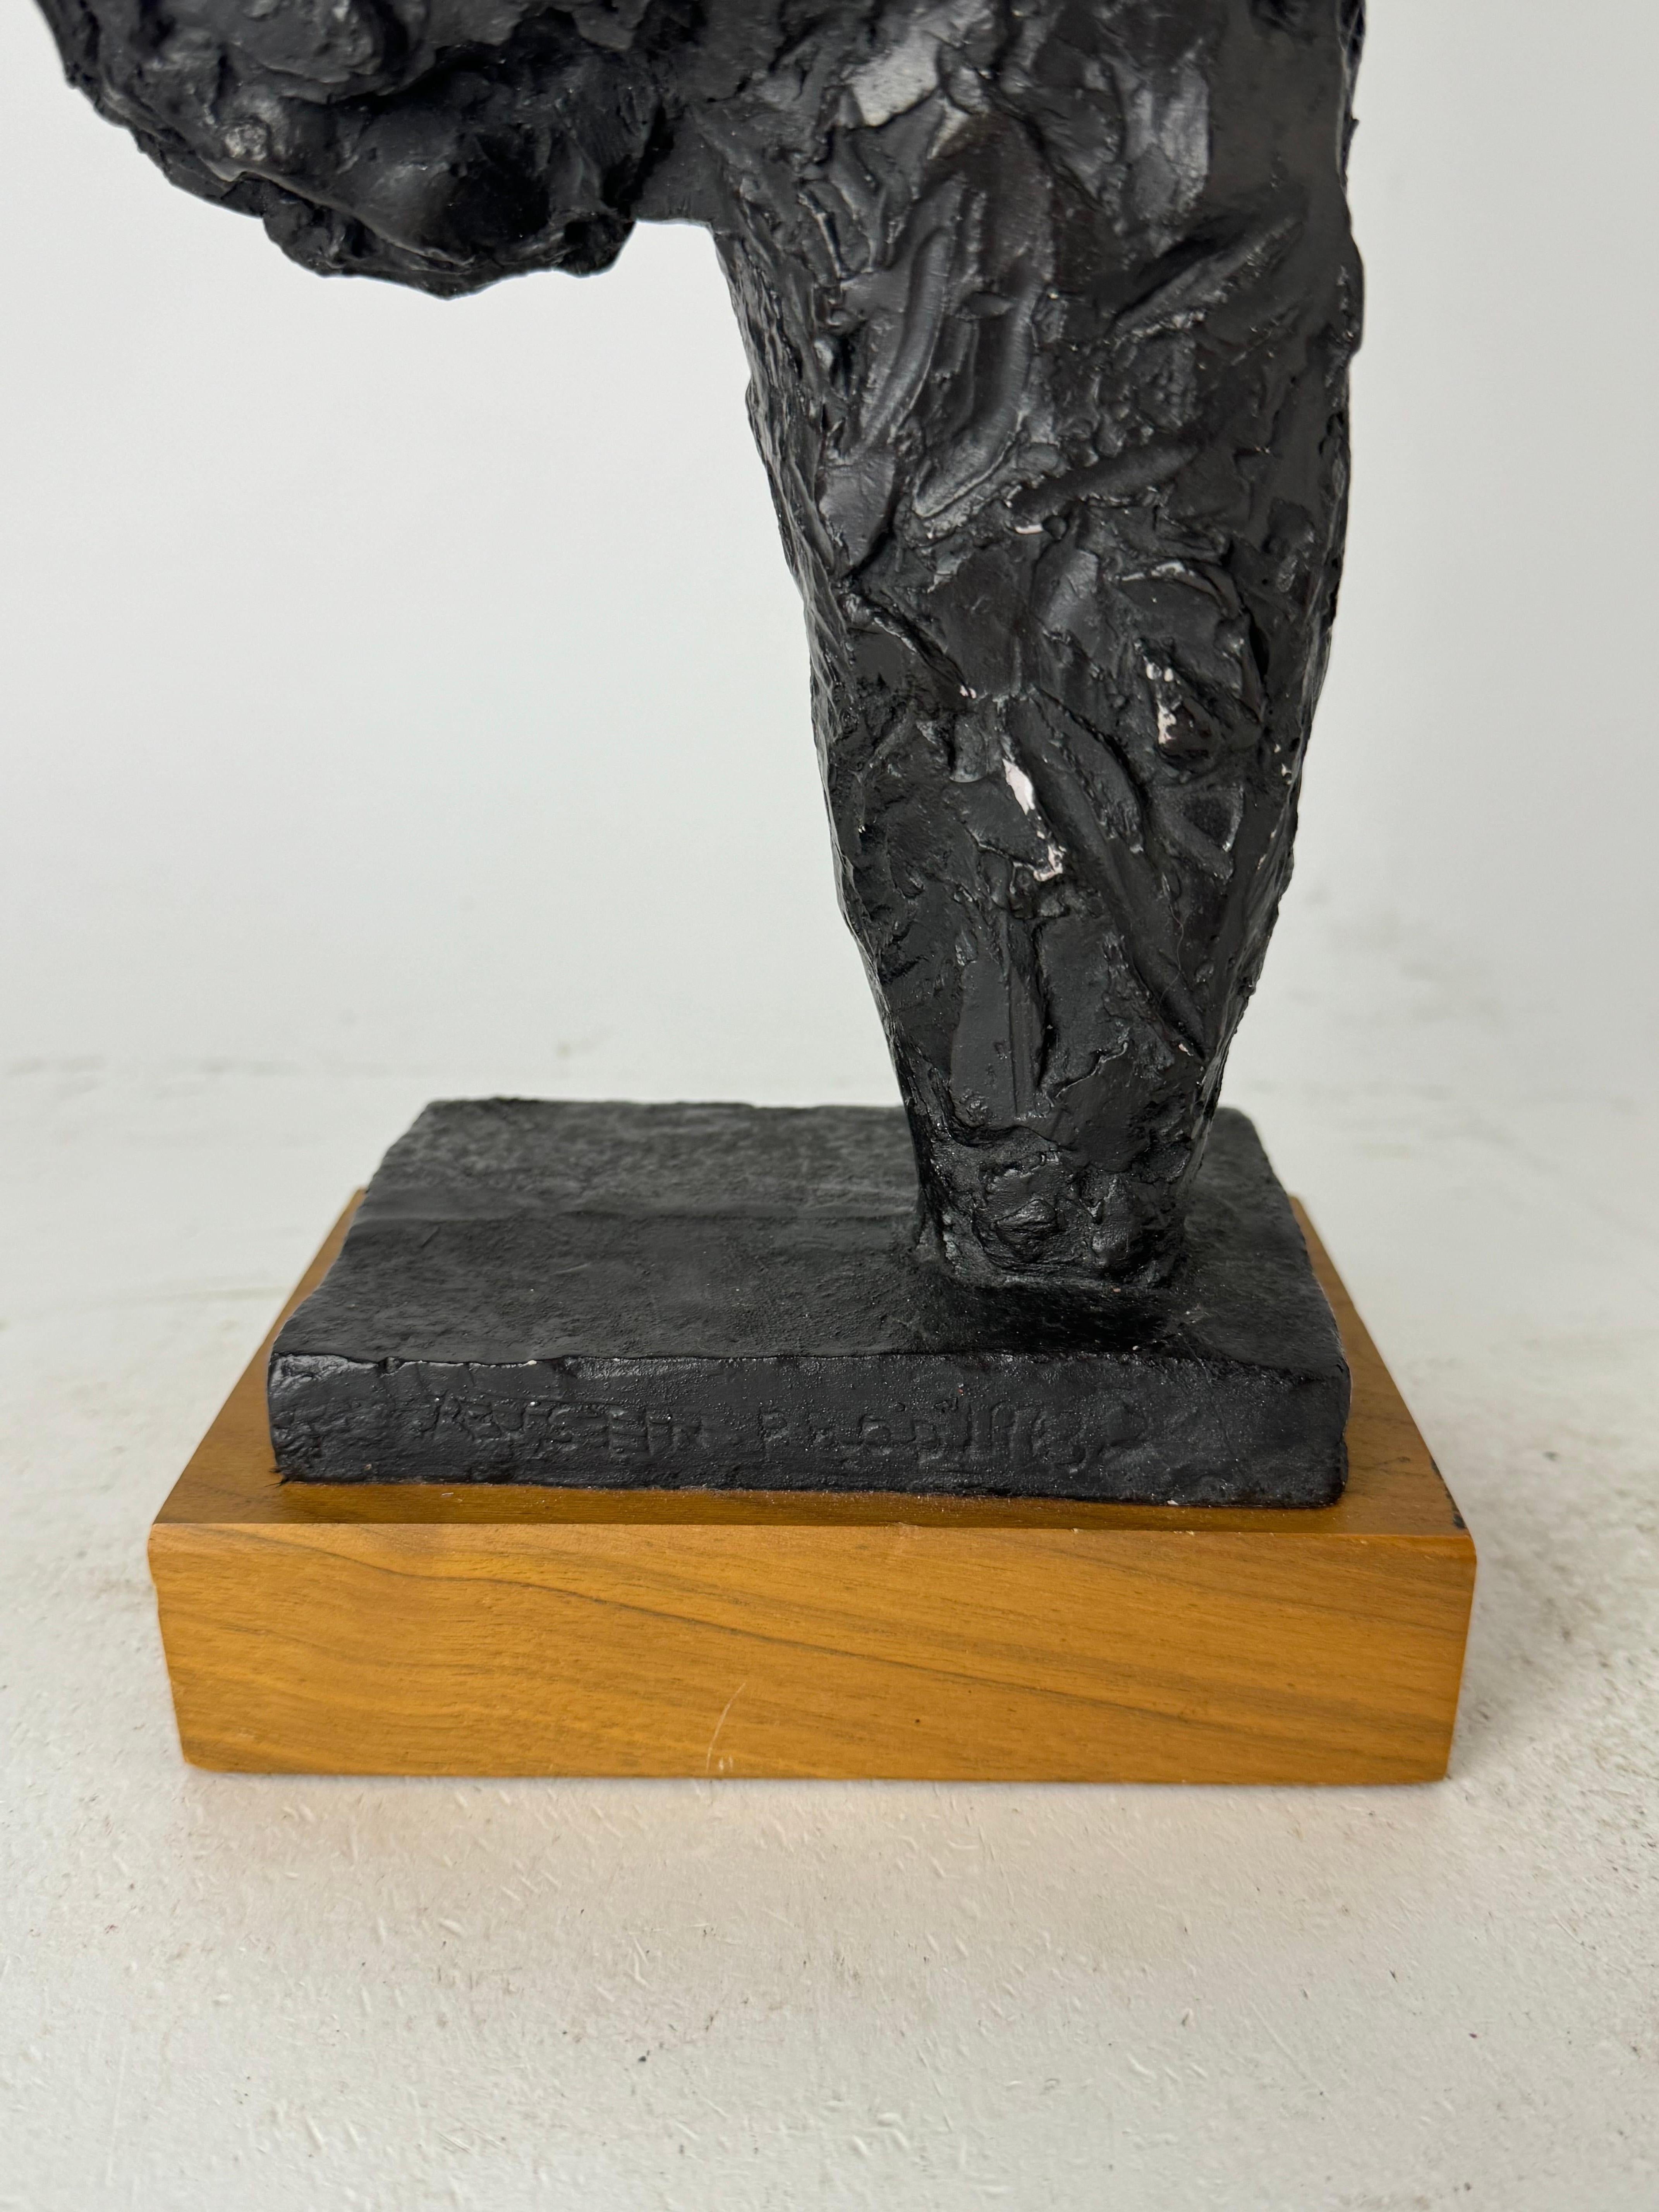 Sculpture de Rodin « Le marcheur, étude pour le torse », Austin Productions, 1963 1